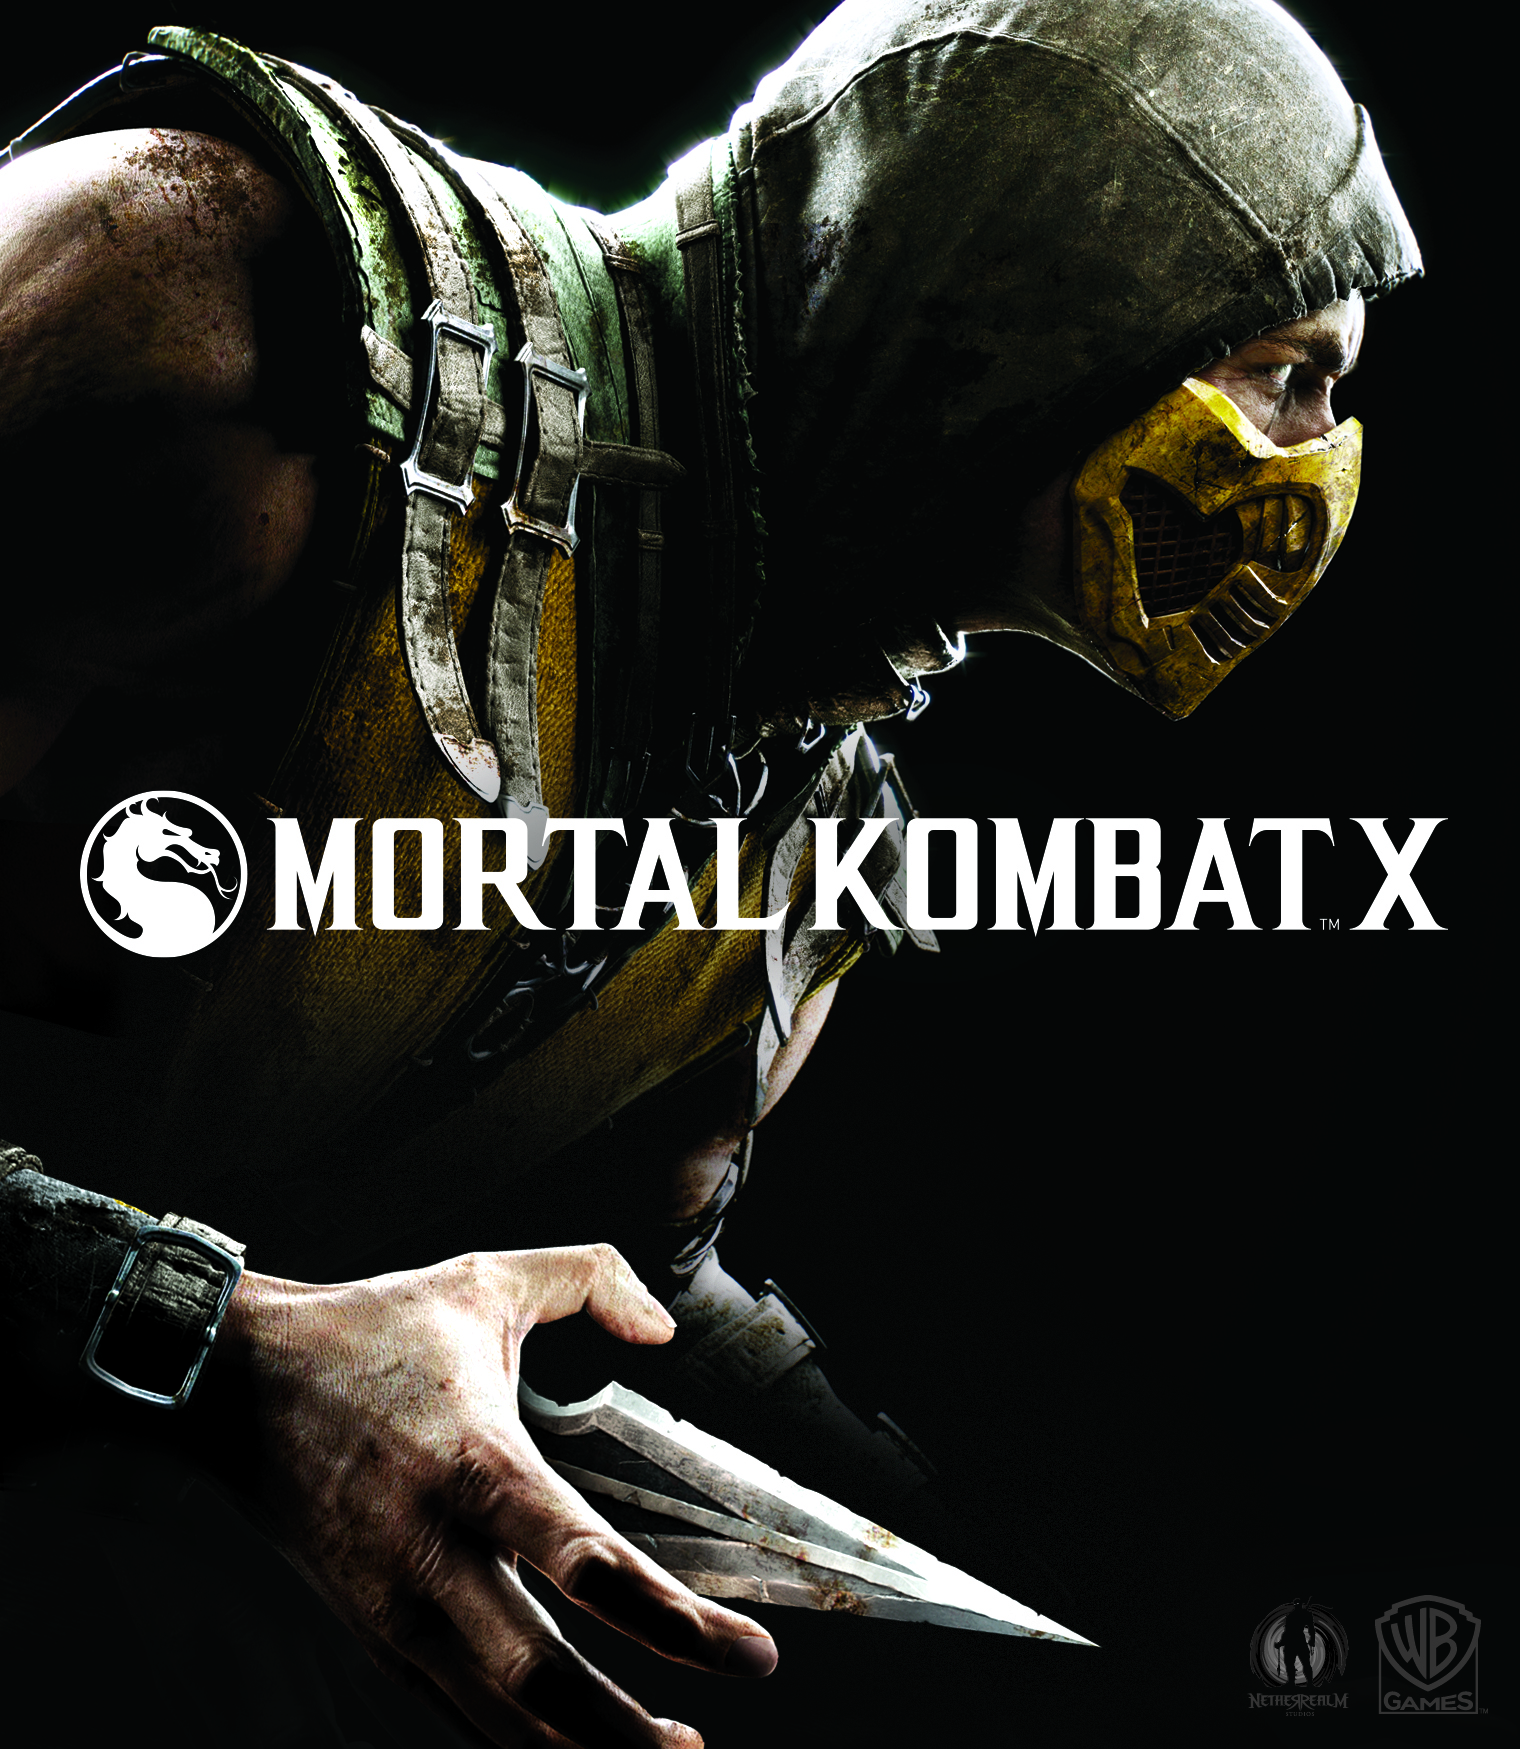 ANÁLISE: Mortal Kombat X